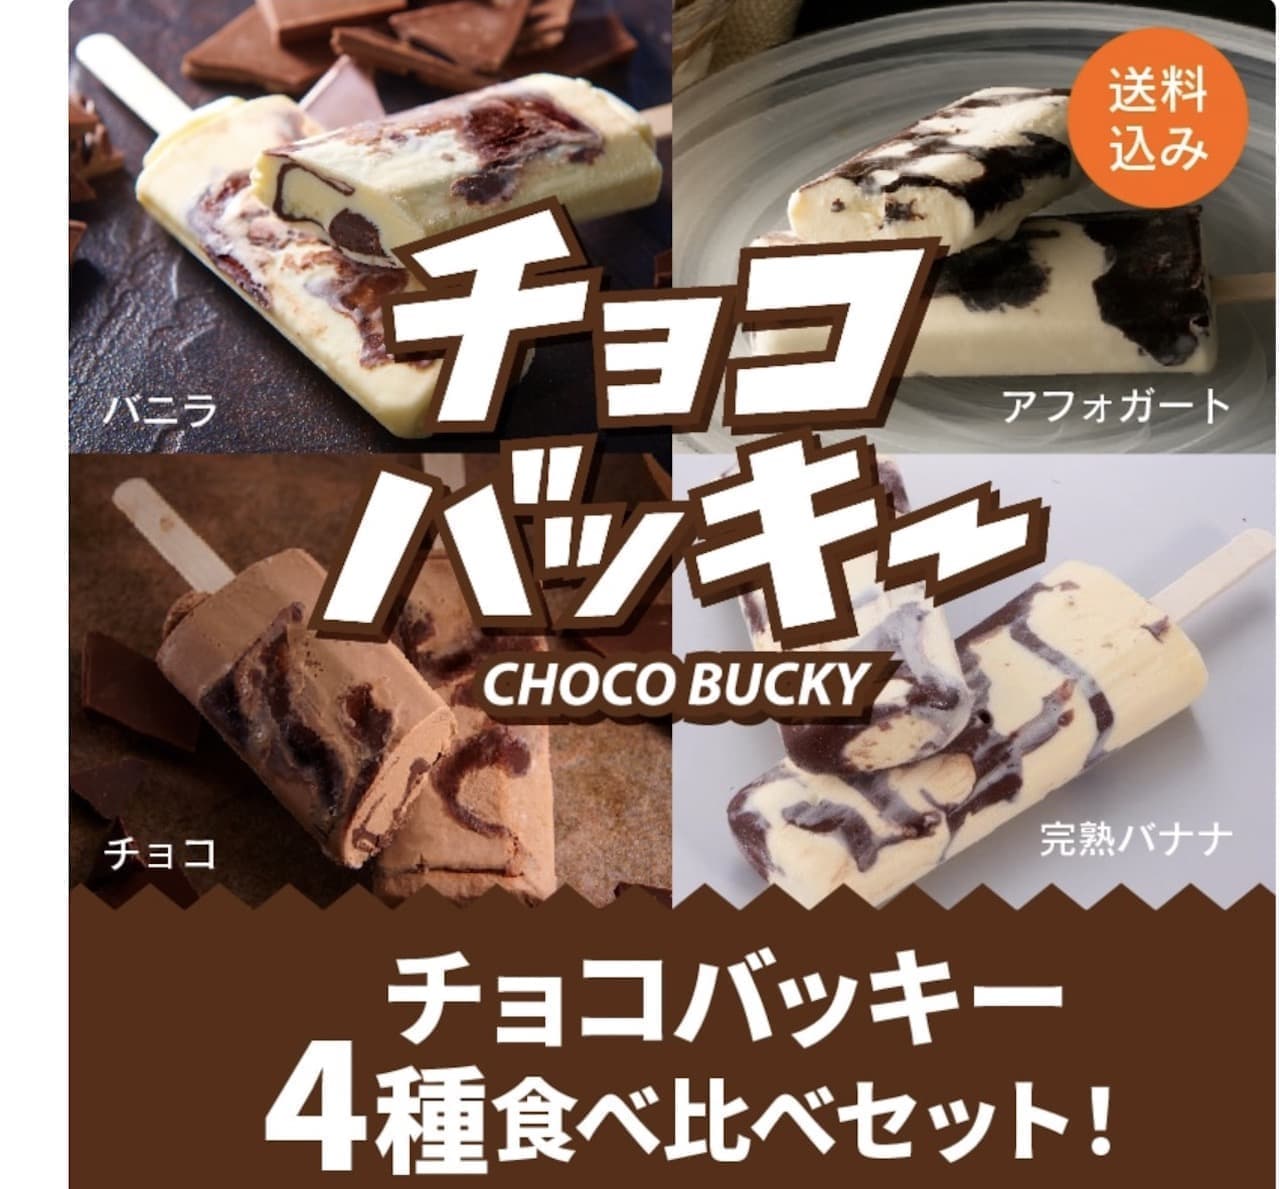 シャトレーゼ「【通販】チョコバッキー食べ比べセット 4種36本」